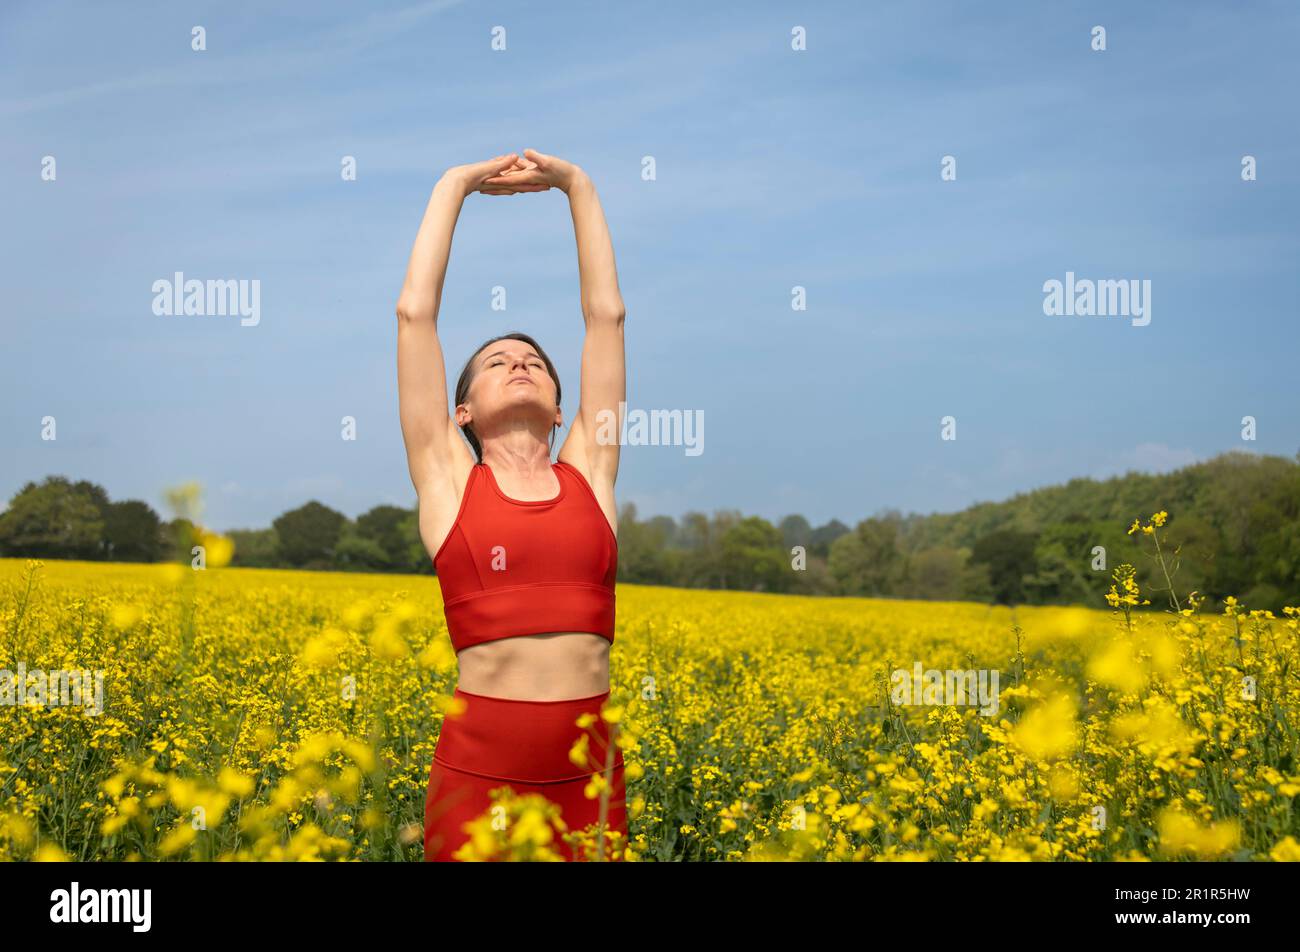 fit, corredor de mujer deportiva haciendo un estiramiento del brazo en un campo amarillo con un cielo azul Foto de stock